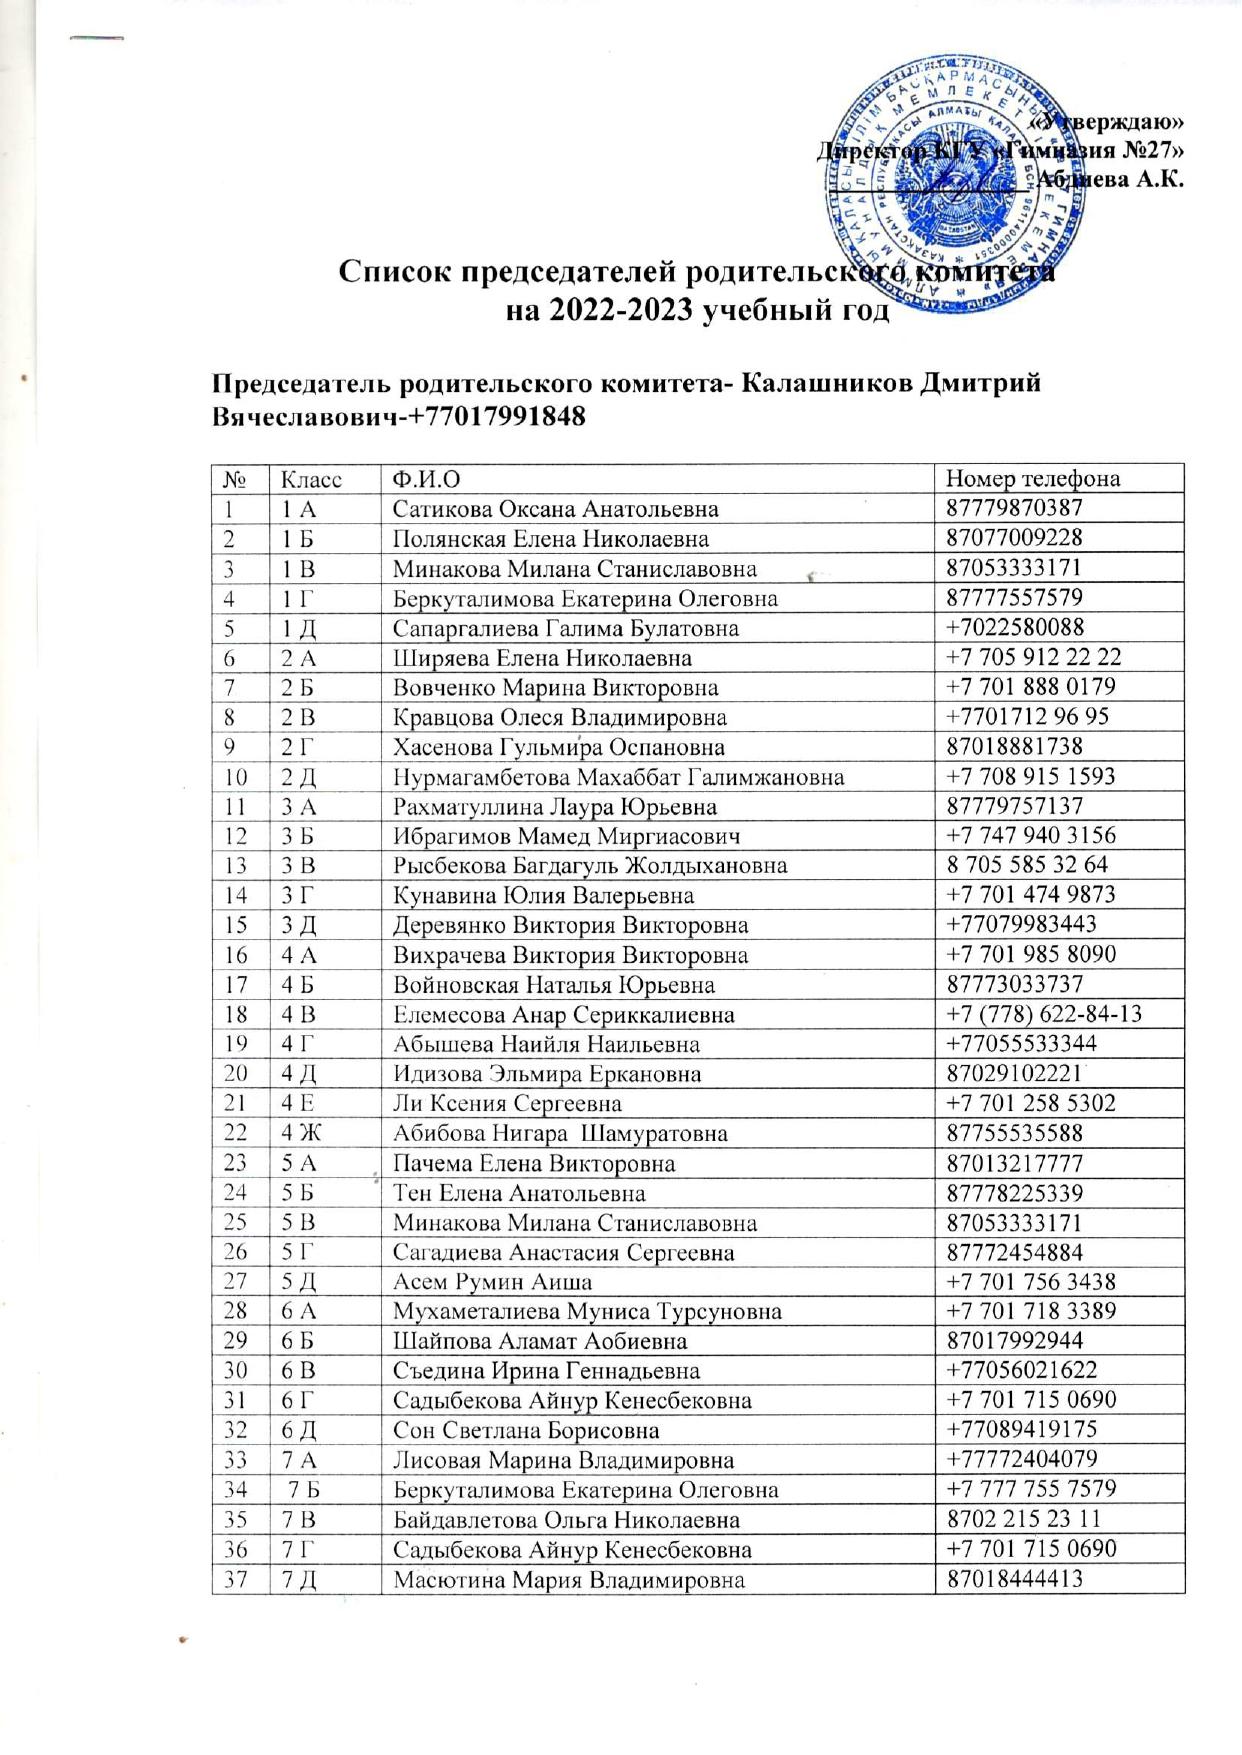 Список председателей родительского комитета на 2022-2023 у.г.